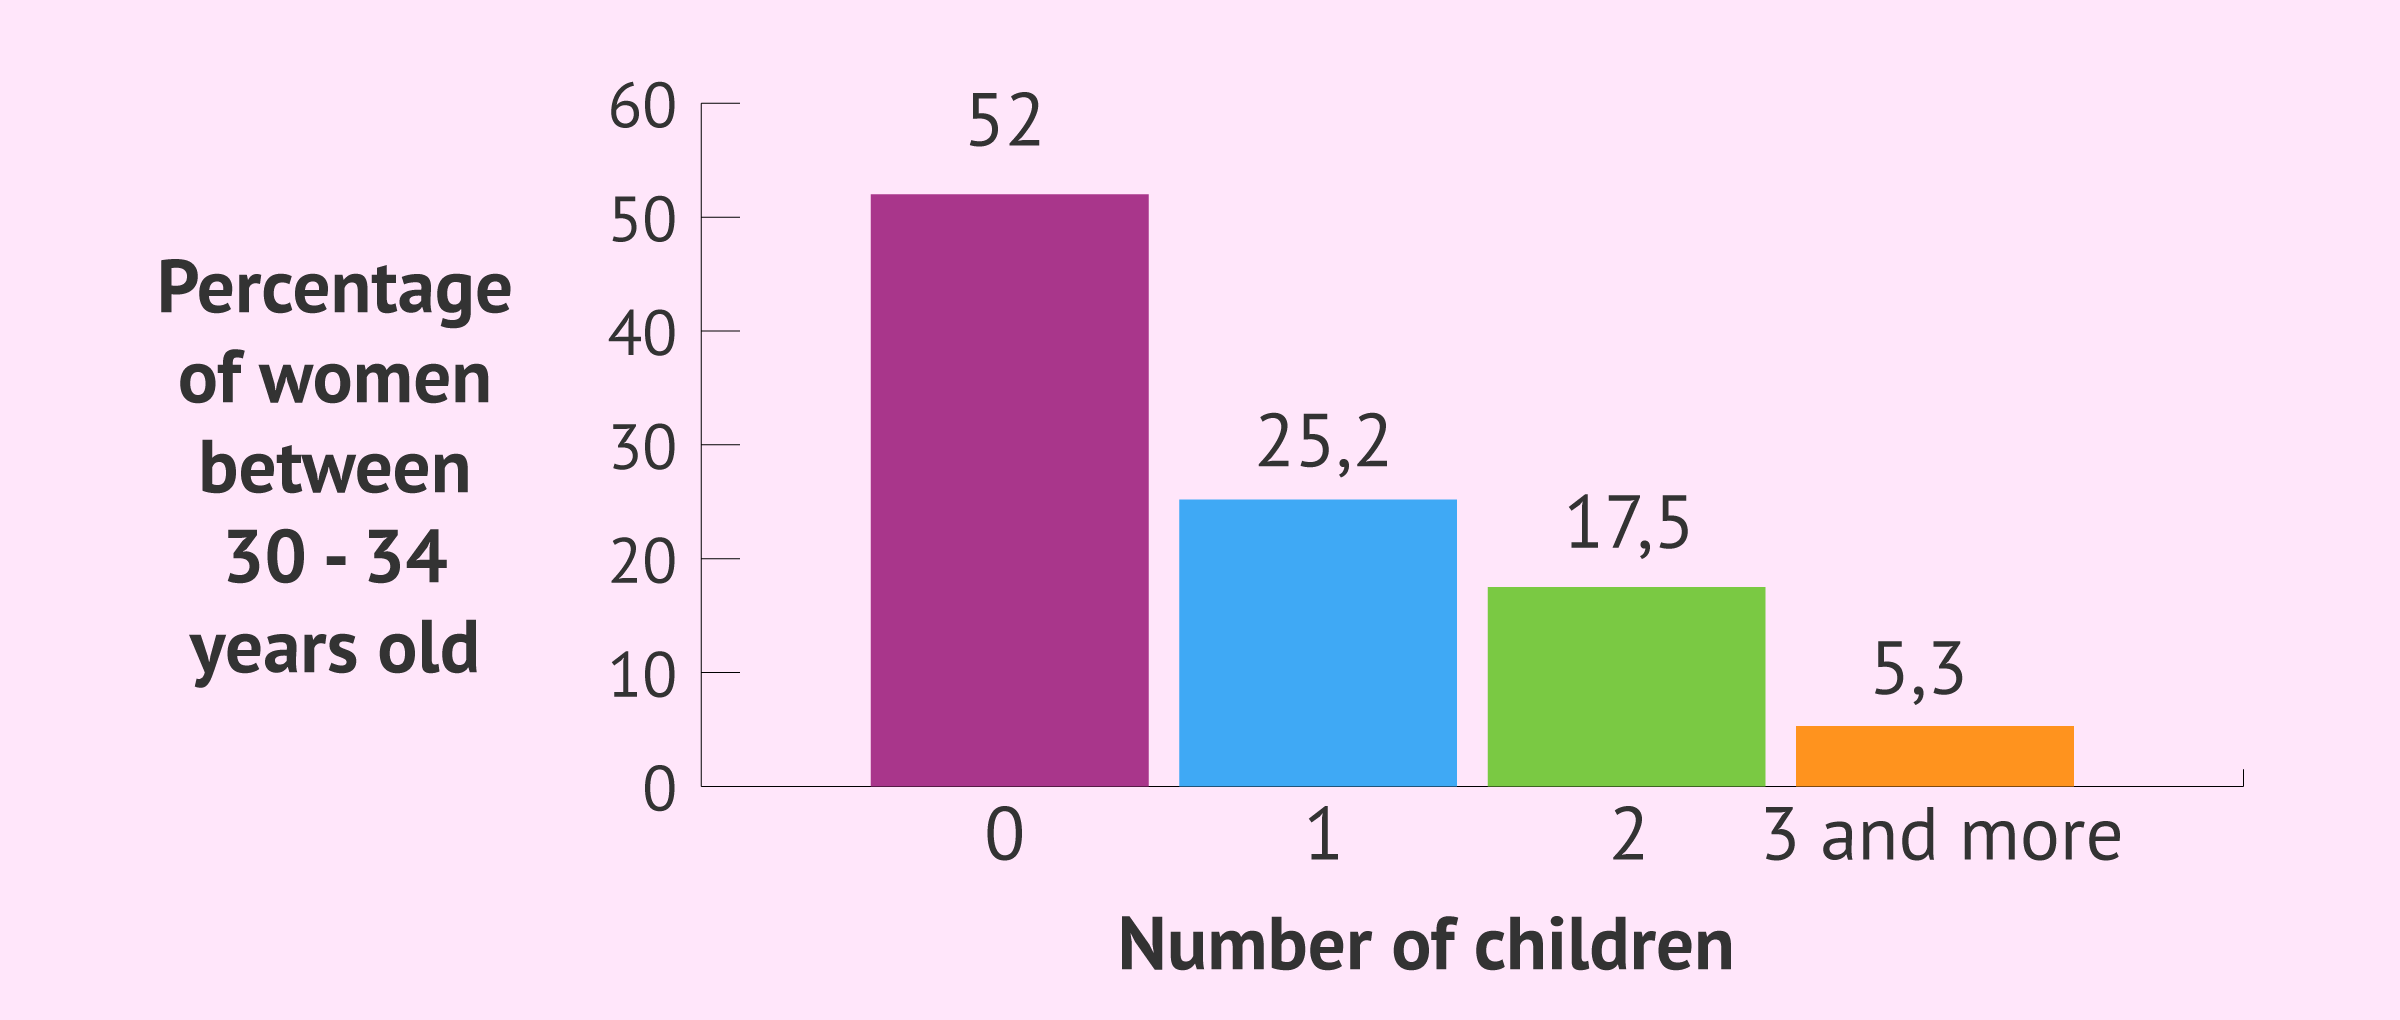 Number of children in women between 30 - 34 years old